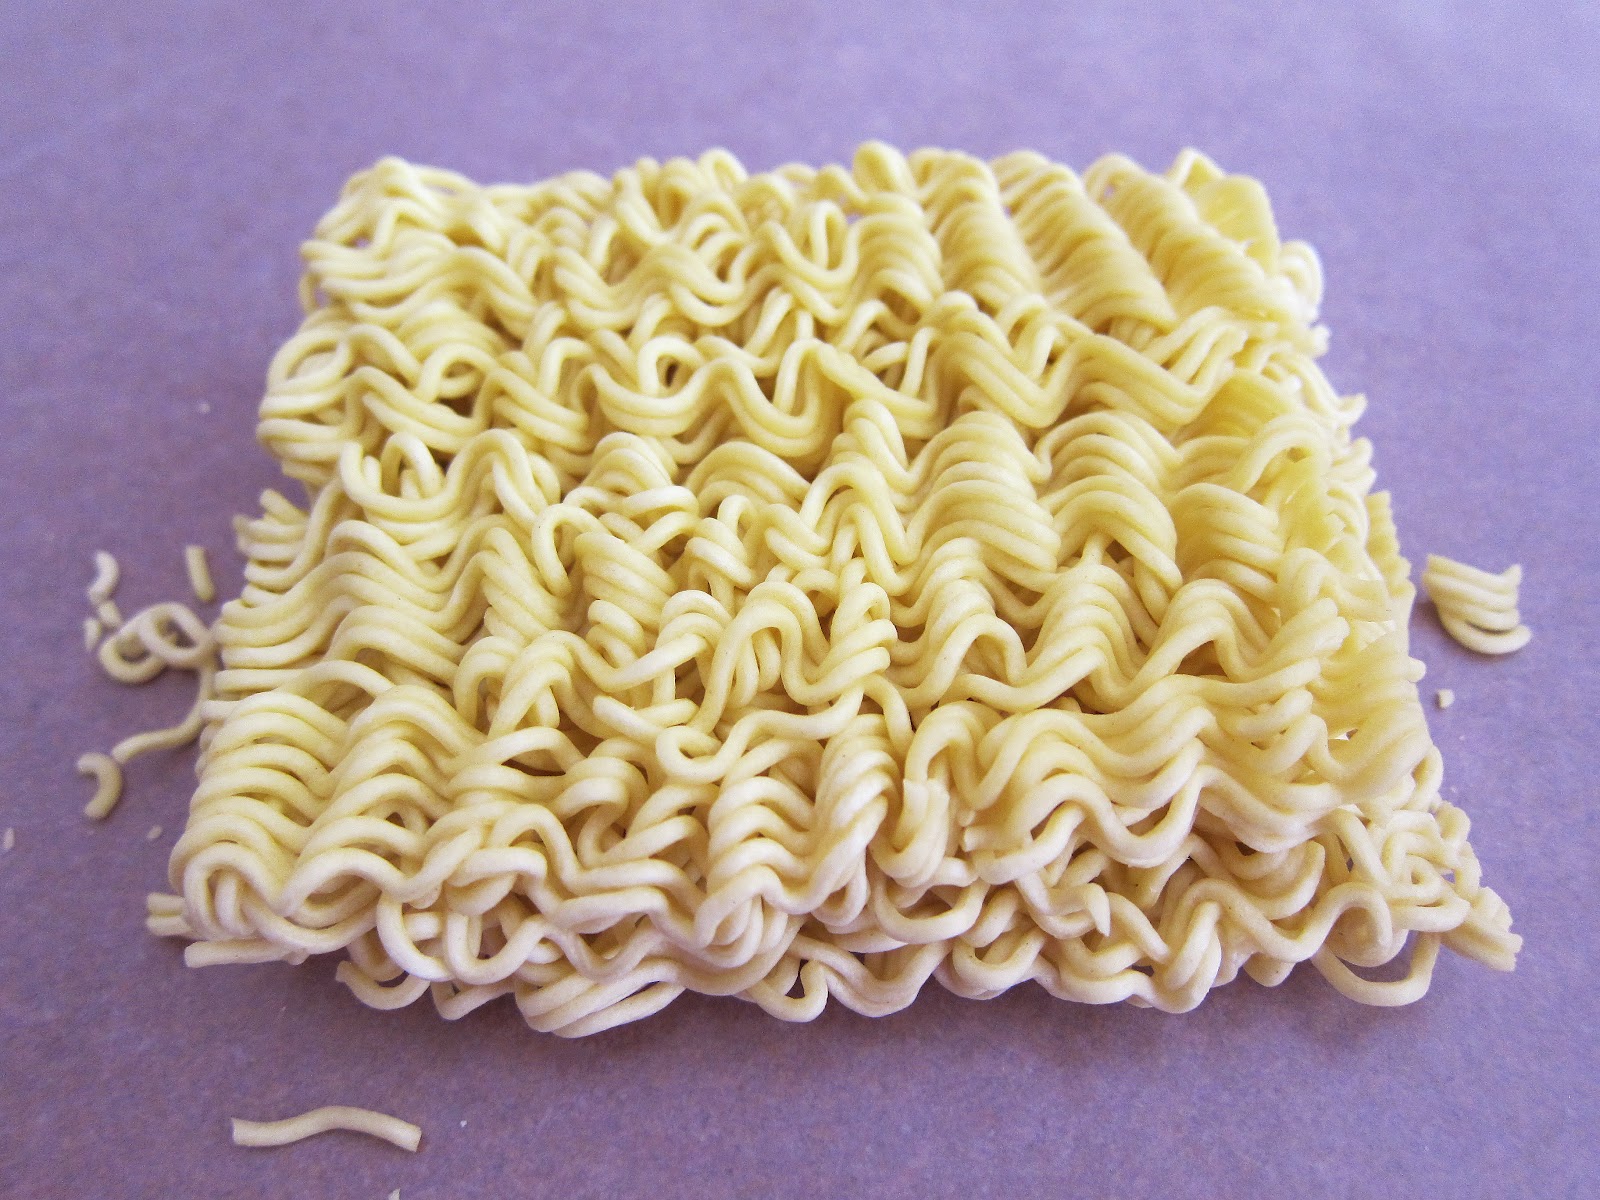 ramen-noodles.jpg